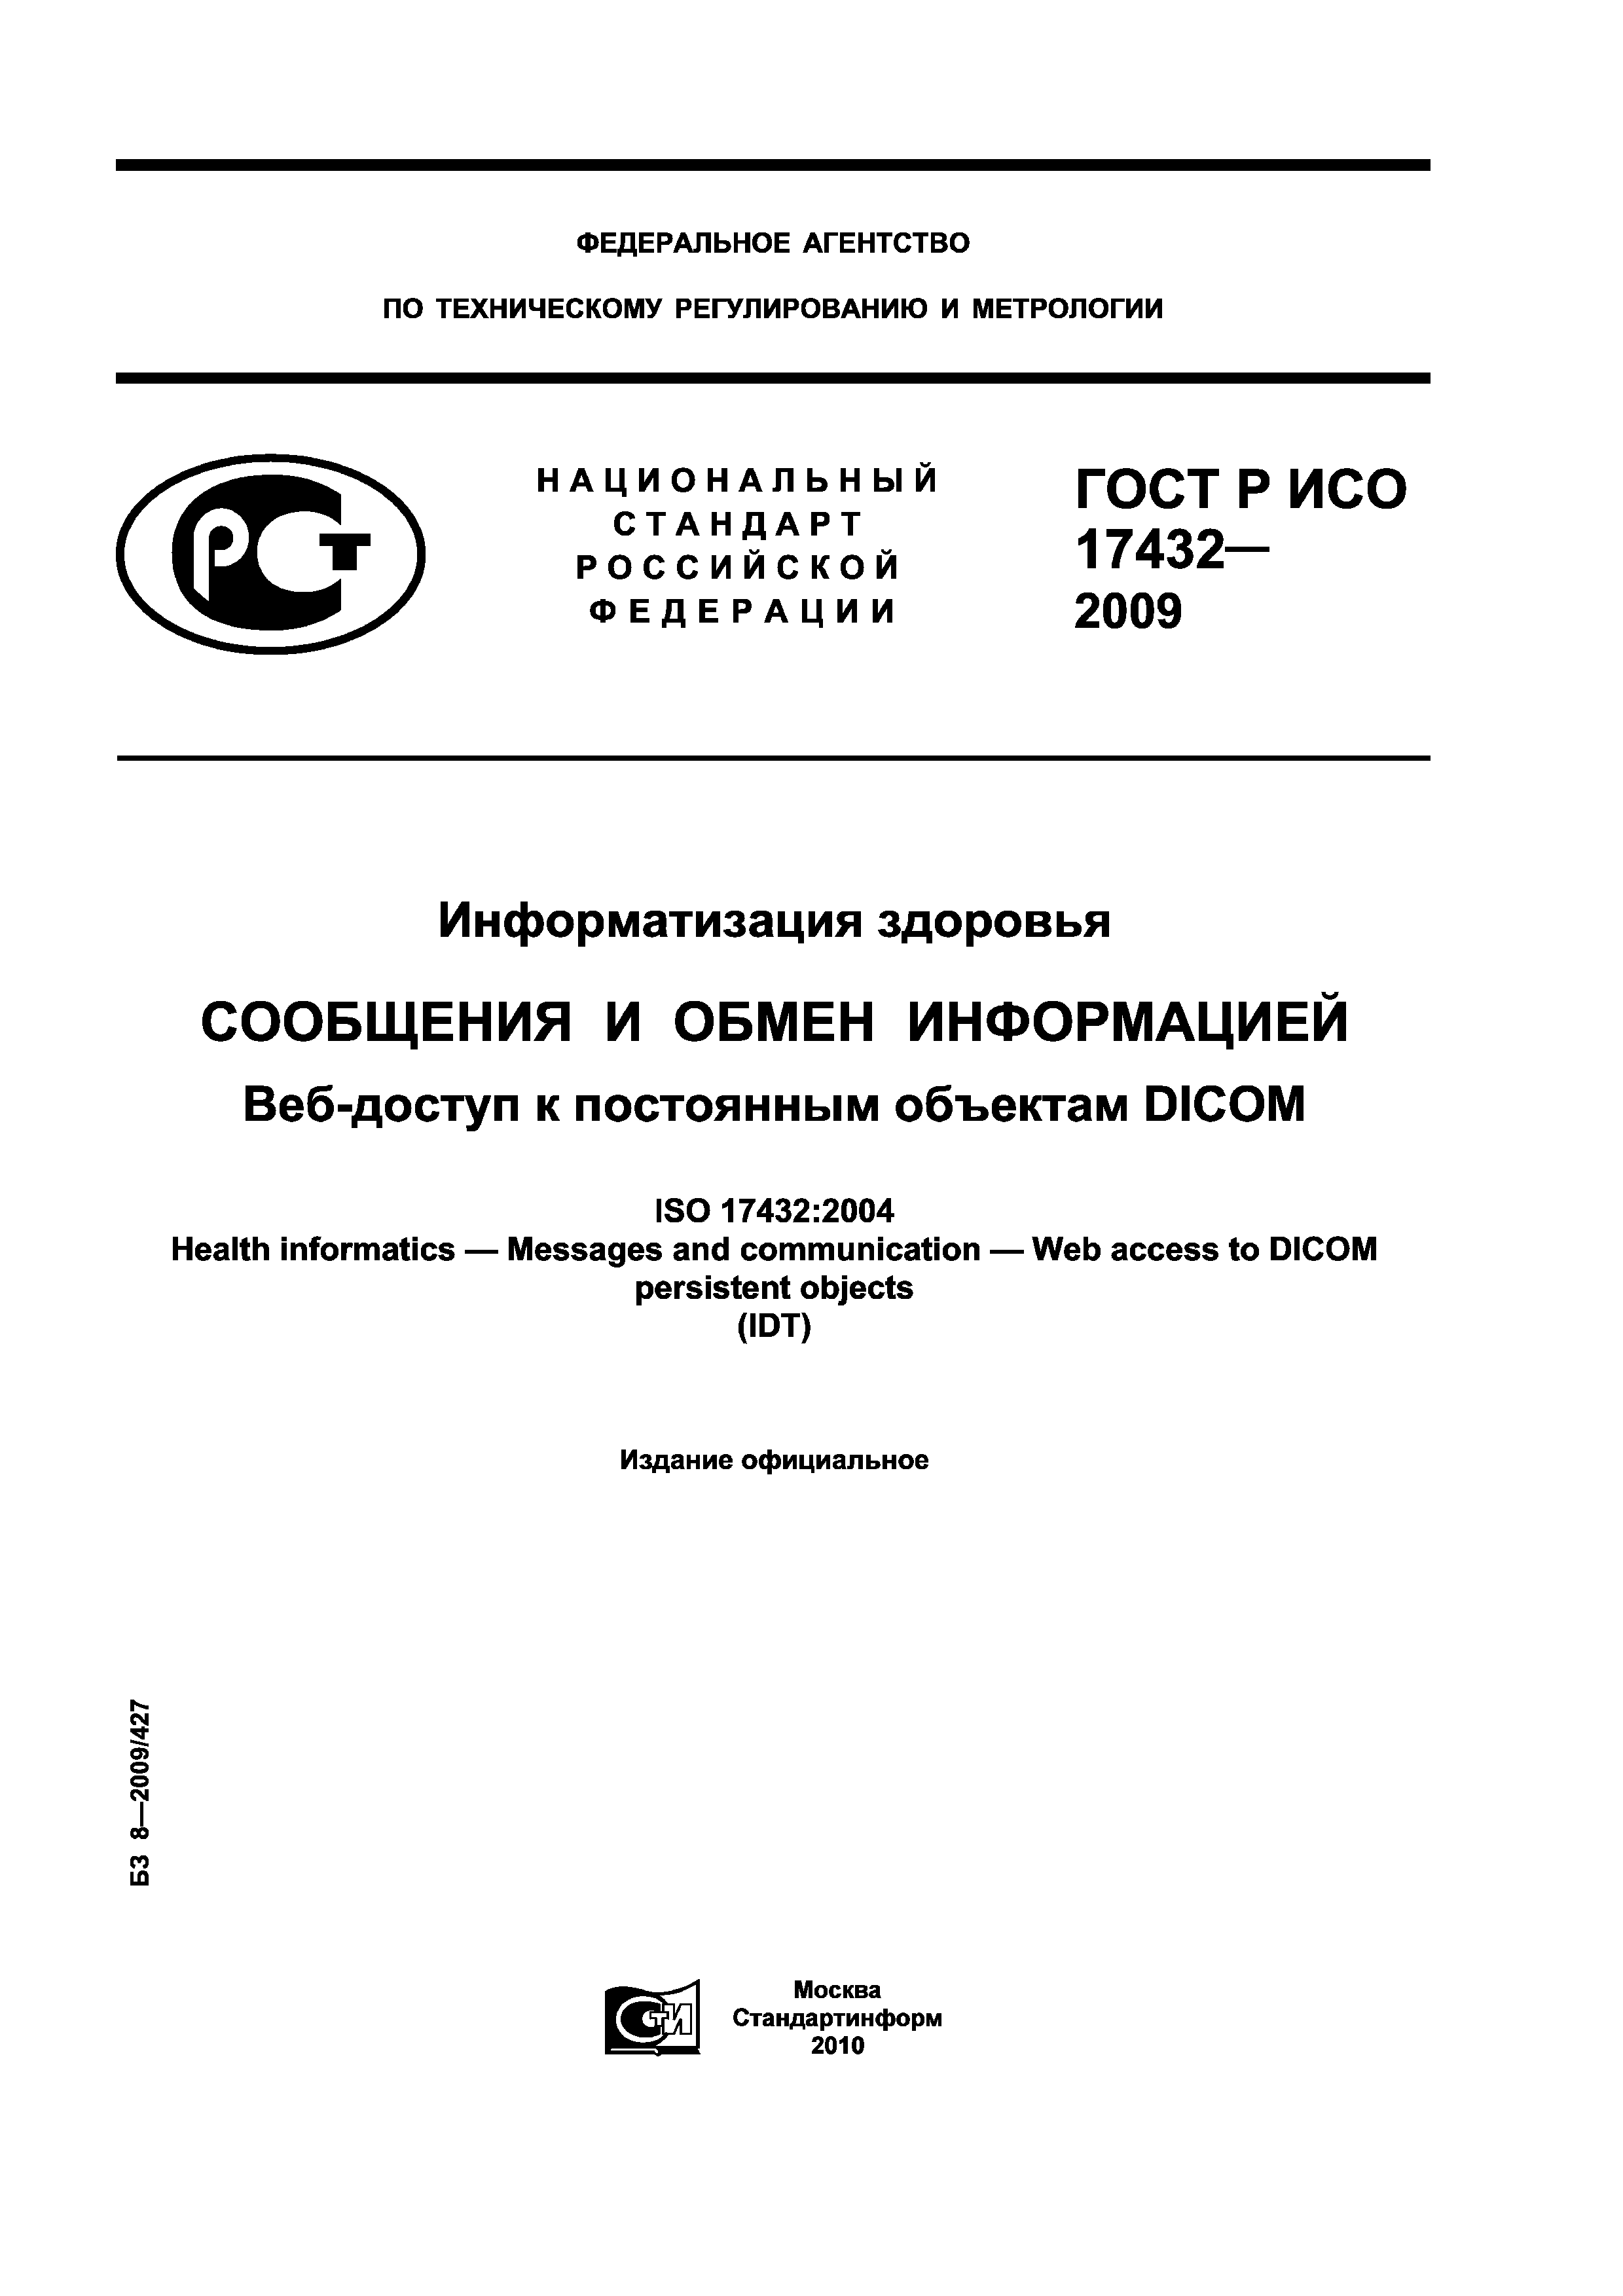 ГОСТ Р ИСО 17432-2009